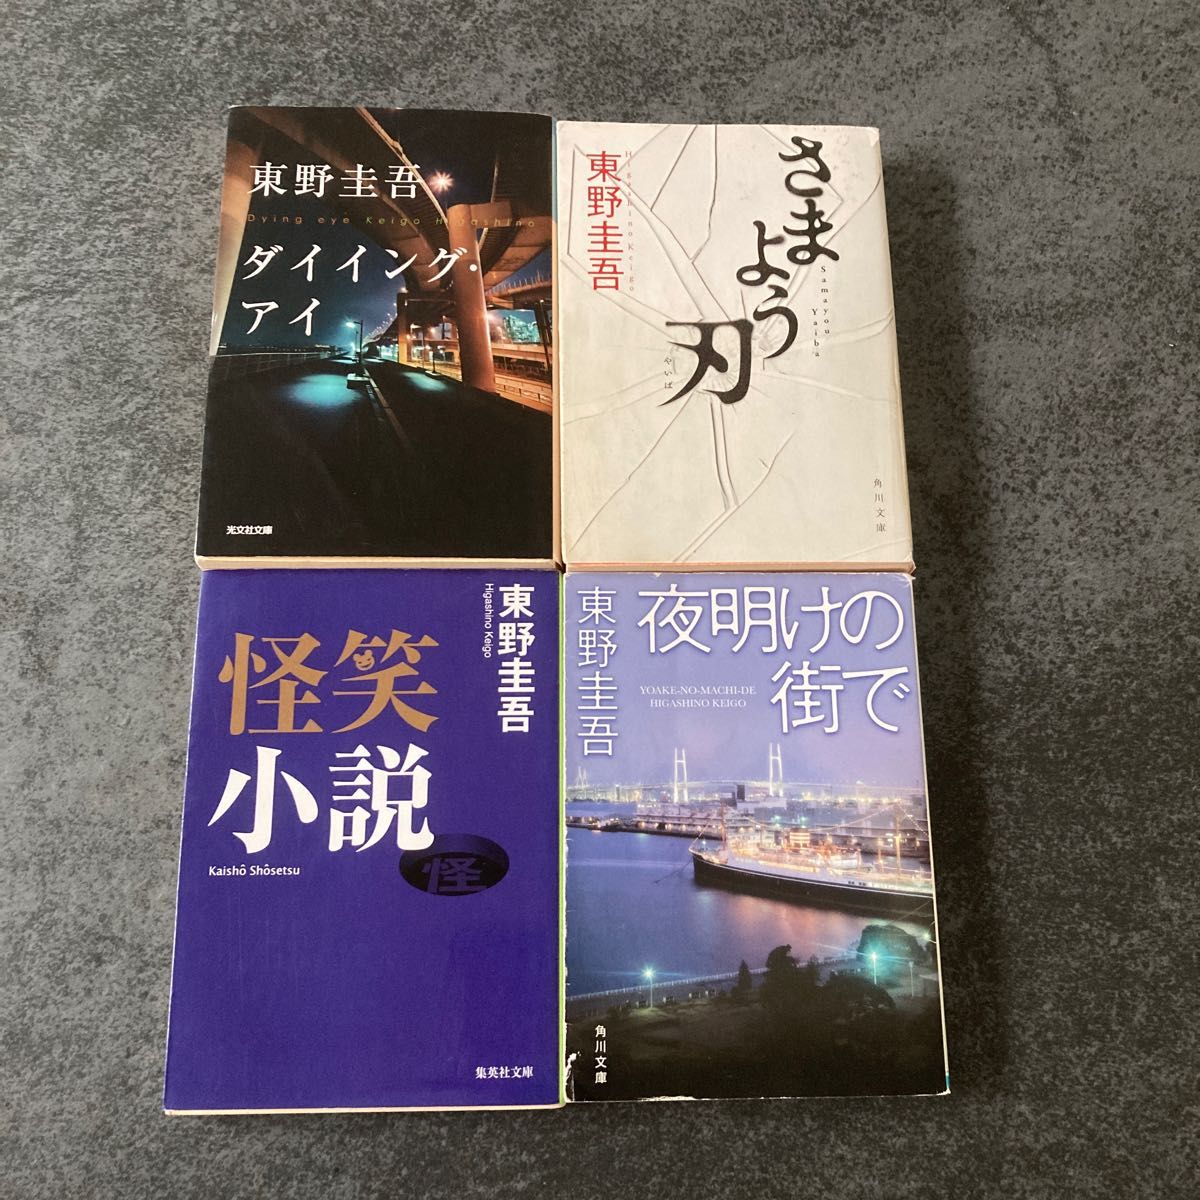 東野圭吾「ダイイング・アイ」「さまよう刃」「怪笑小説」「夜明けの街で」4冊